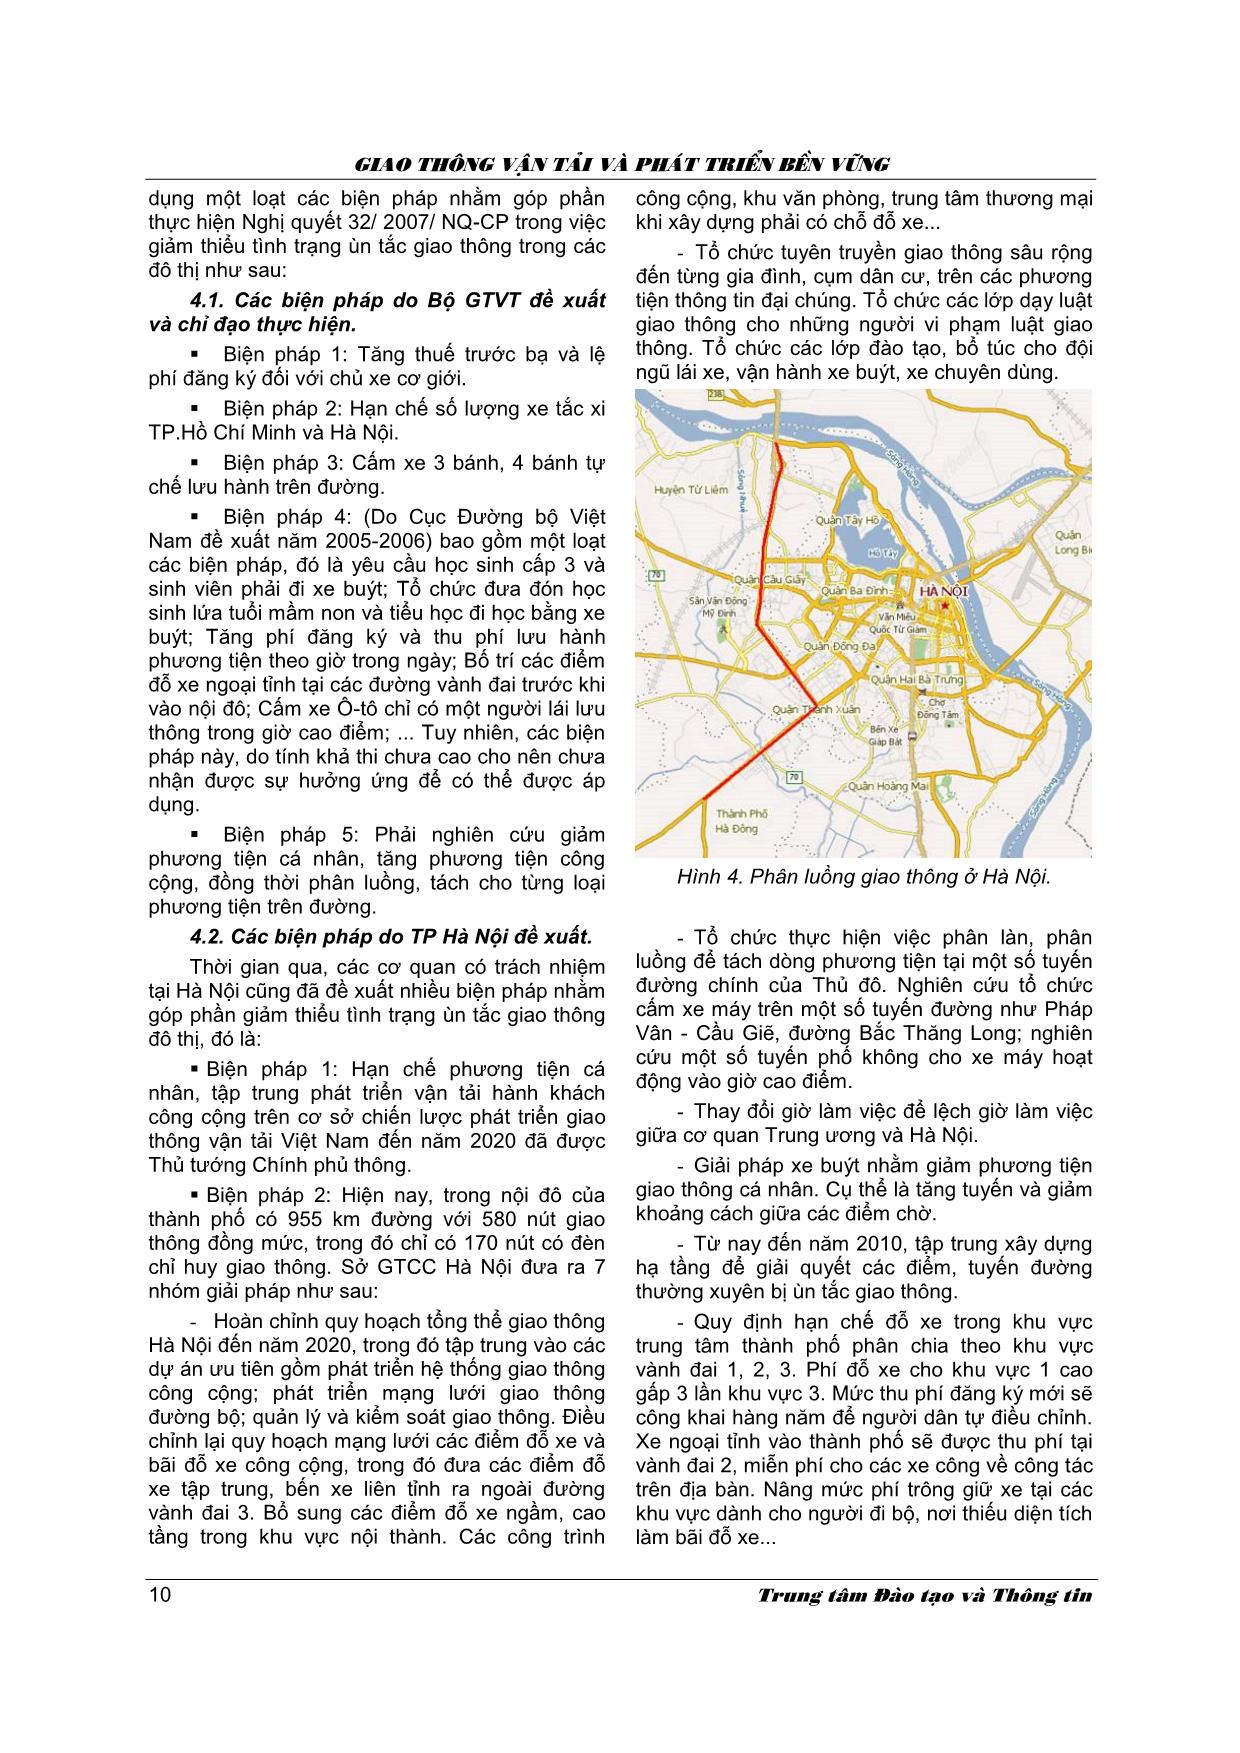 Tình hình và các giải pháp nhằm tăng cường an toàn giao thông đường bộ và an toàn giao thông đô thị ở Việt Nam trang 6